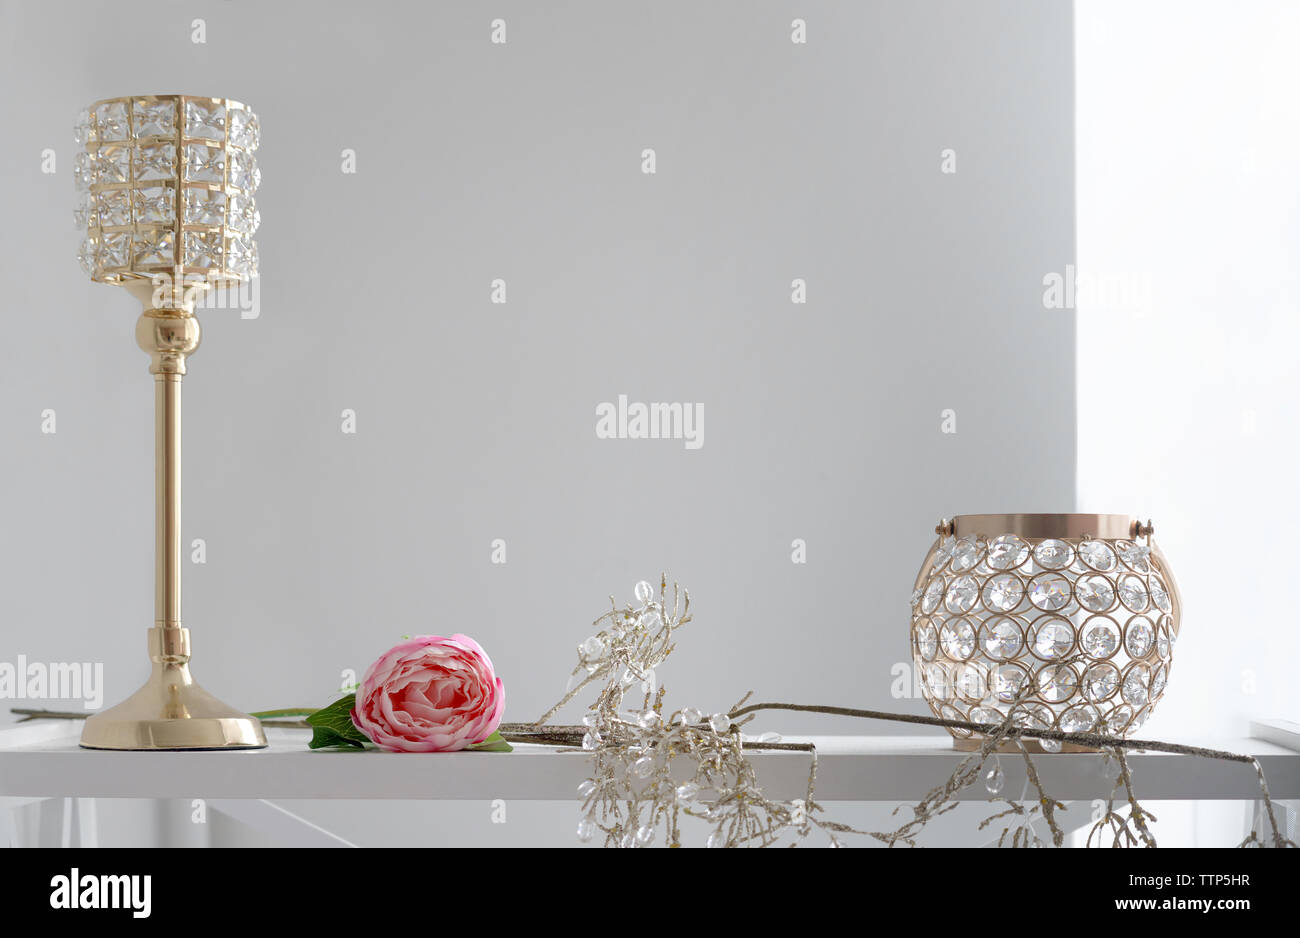 Golden e il cristallo portacandele - Golden home accessori sul bianco ripiano in legno Foto Stock